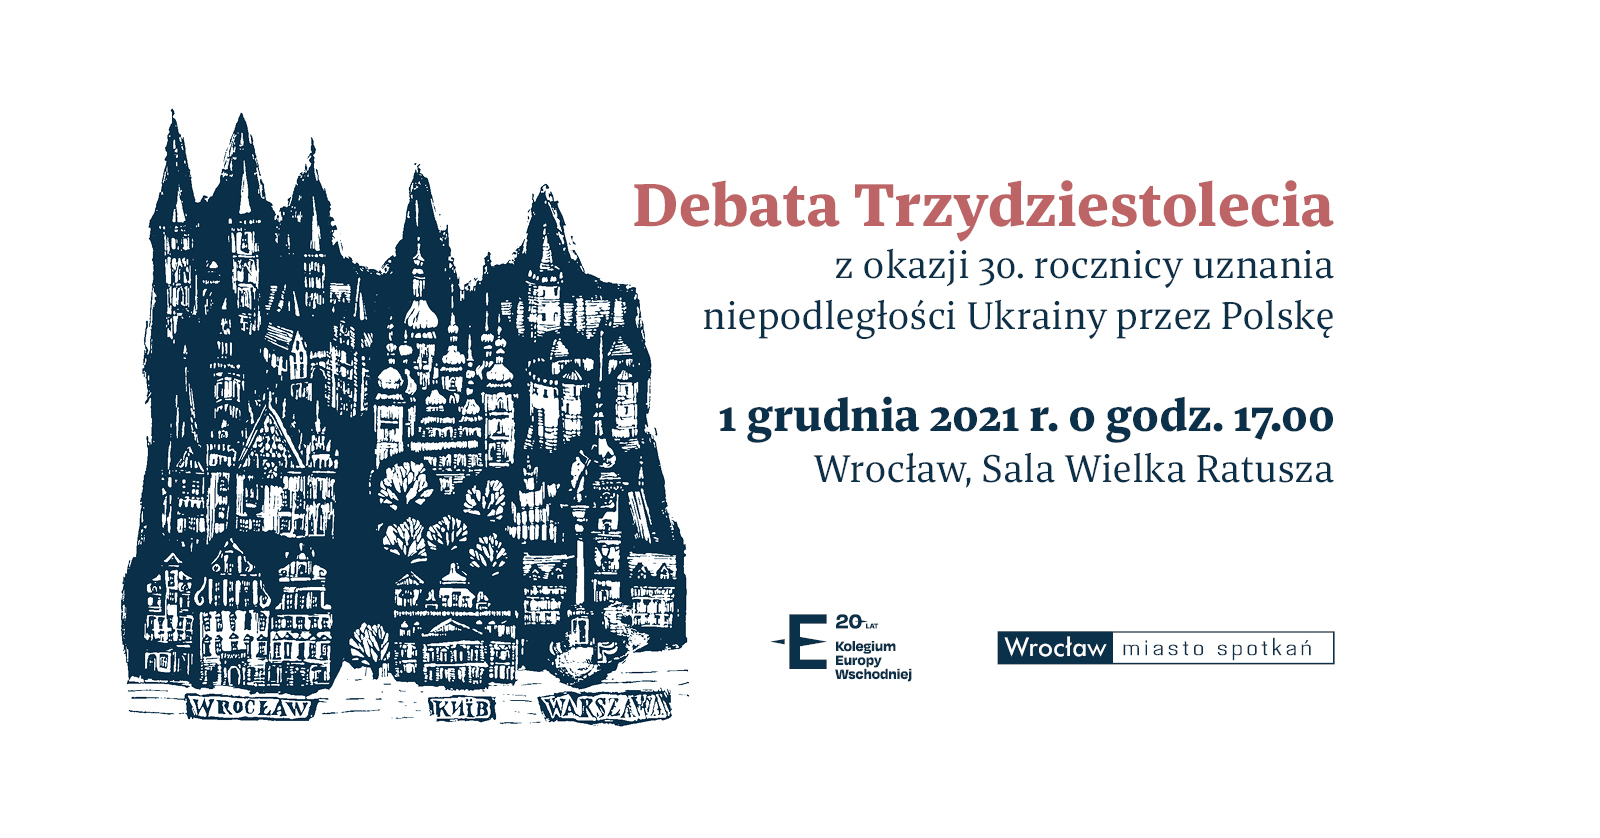 Debata Trzydziestolecia z okazji 30. rocznicy uznania niepodległości Ukrainy przez Polskę